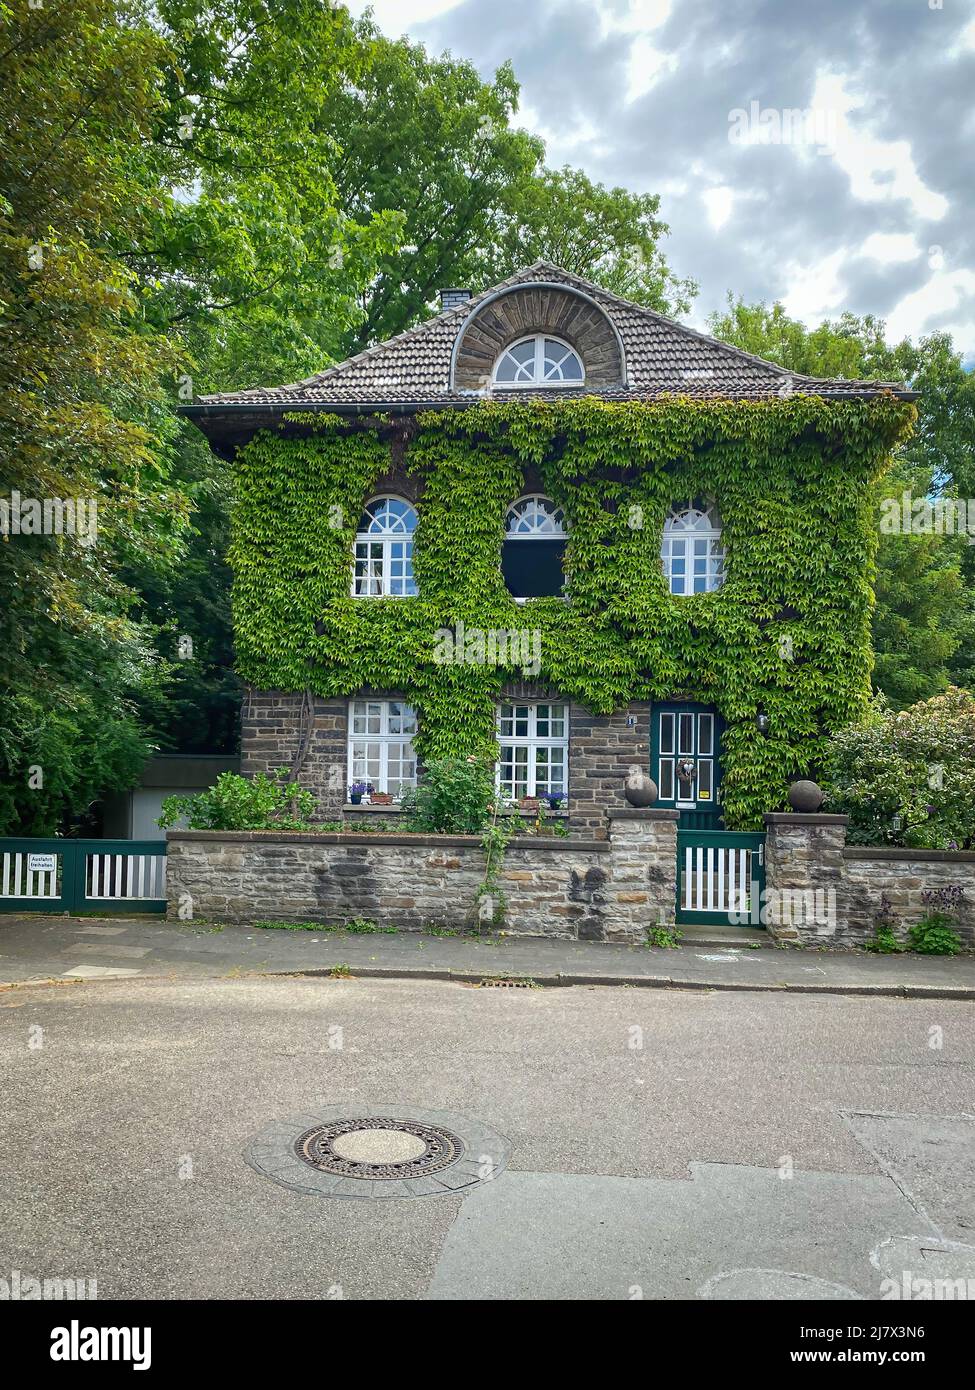 Hermosa casa cubierta de hojas de vid en el barrio “Margarethenhöhe”, el primer asentamiento del movimiento de la ciudad jardín en Alemania. Foto de stock